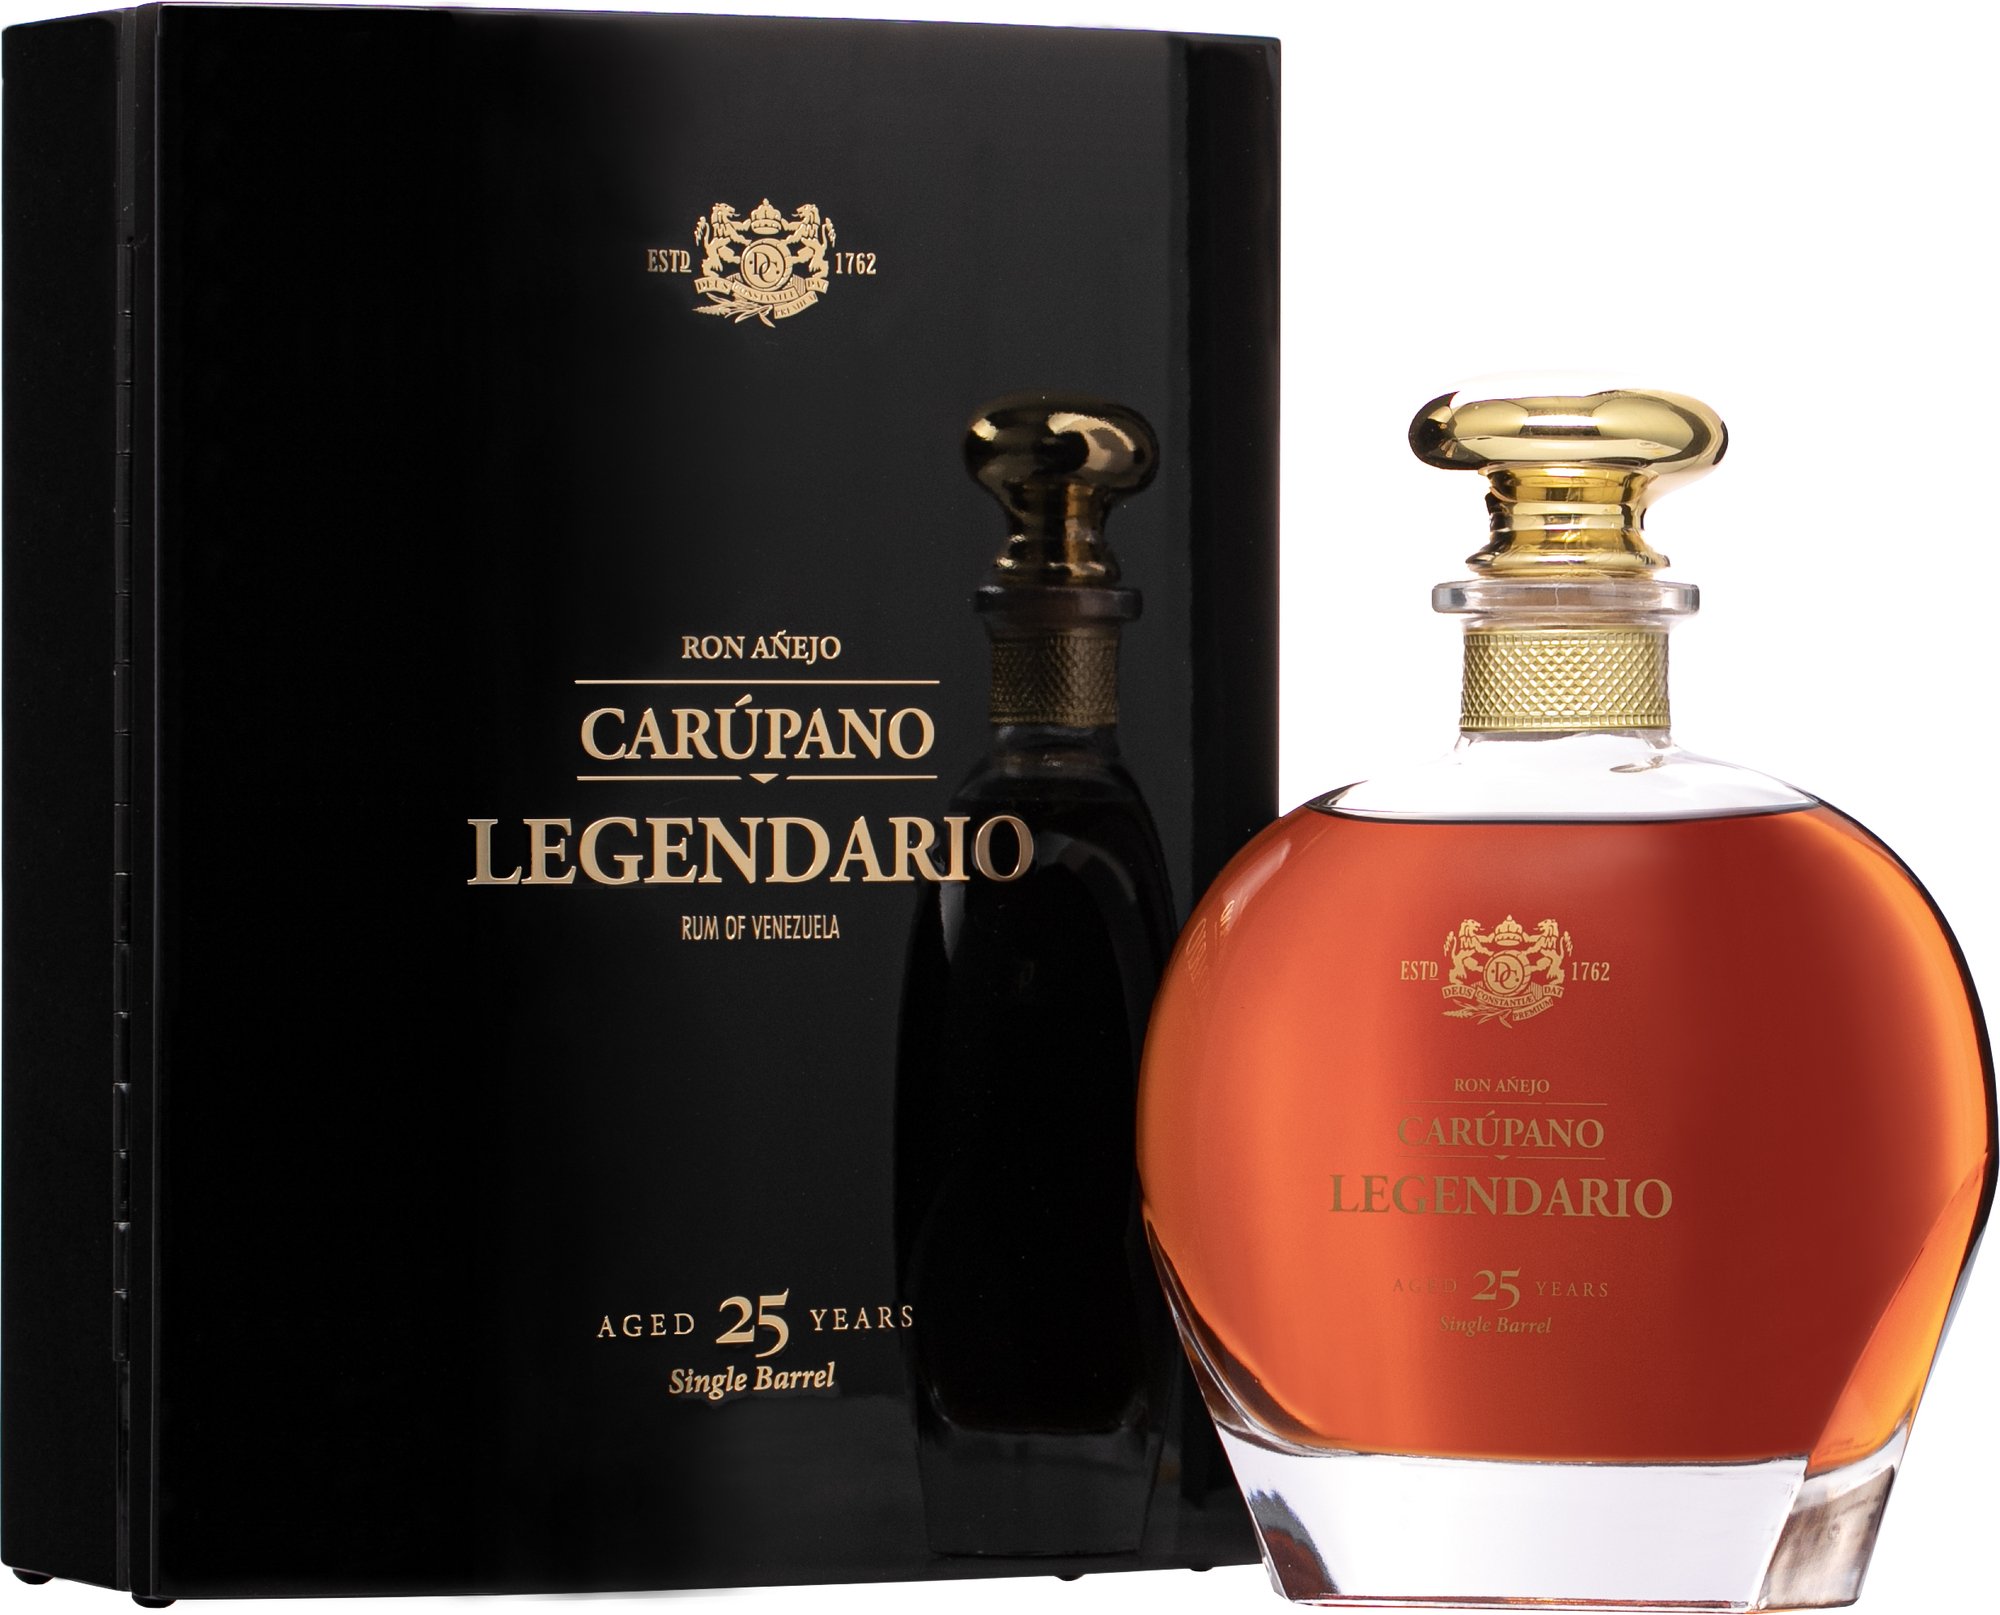 Rum of Spanish tradition (RON)-El Pasador de Oro - Pasion - 38